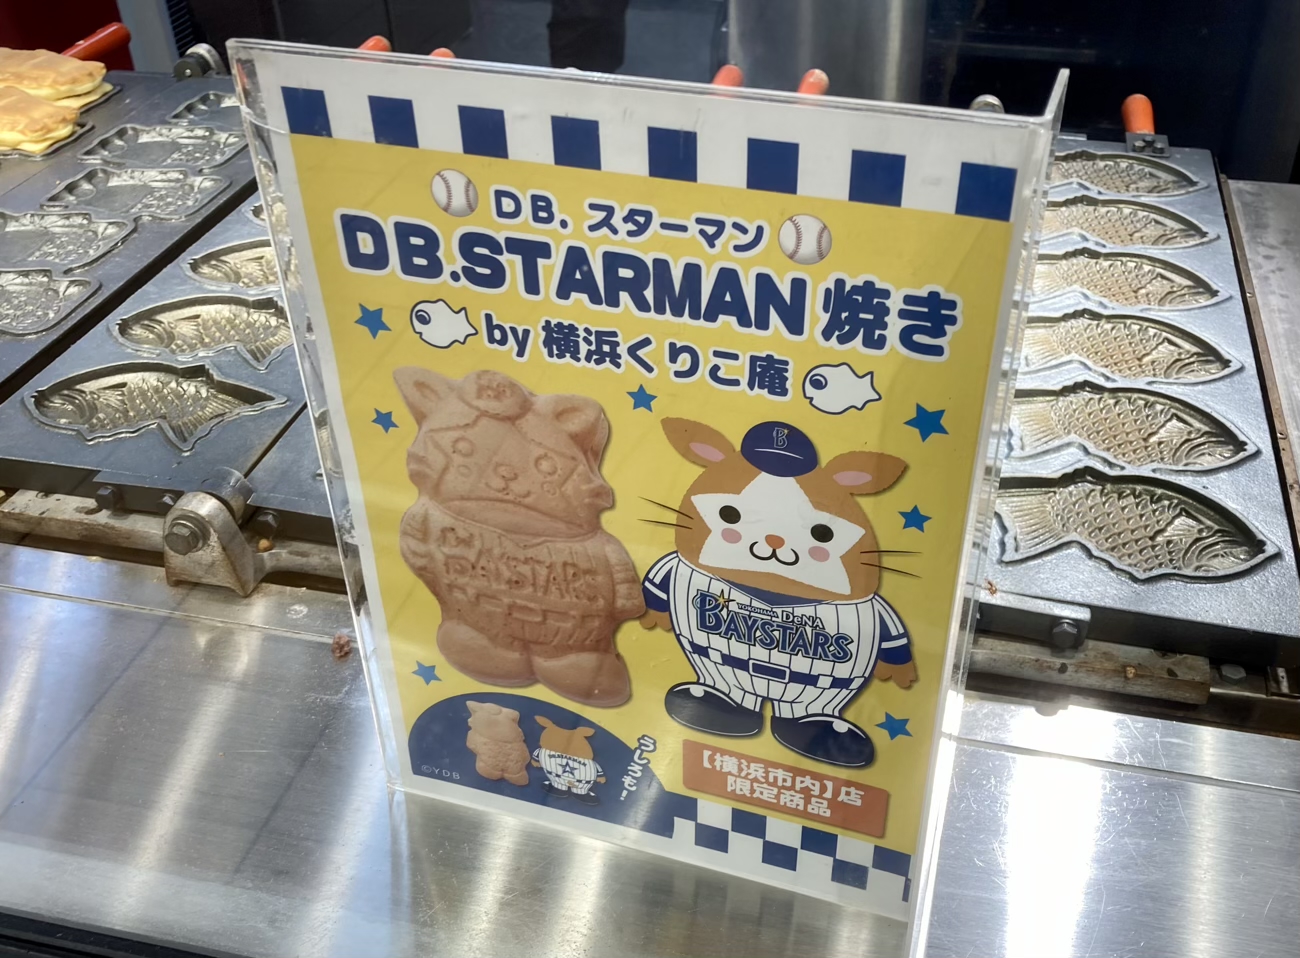 横浜 上大岡駅で売っていた Db スターマン焼き がミルクチョコレートたっぷりで激ウマ 頑張れdenaベイスターズ ロケットニュース24